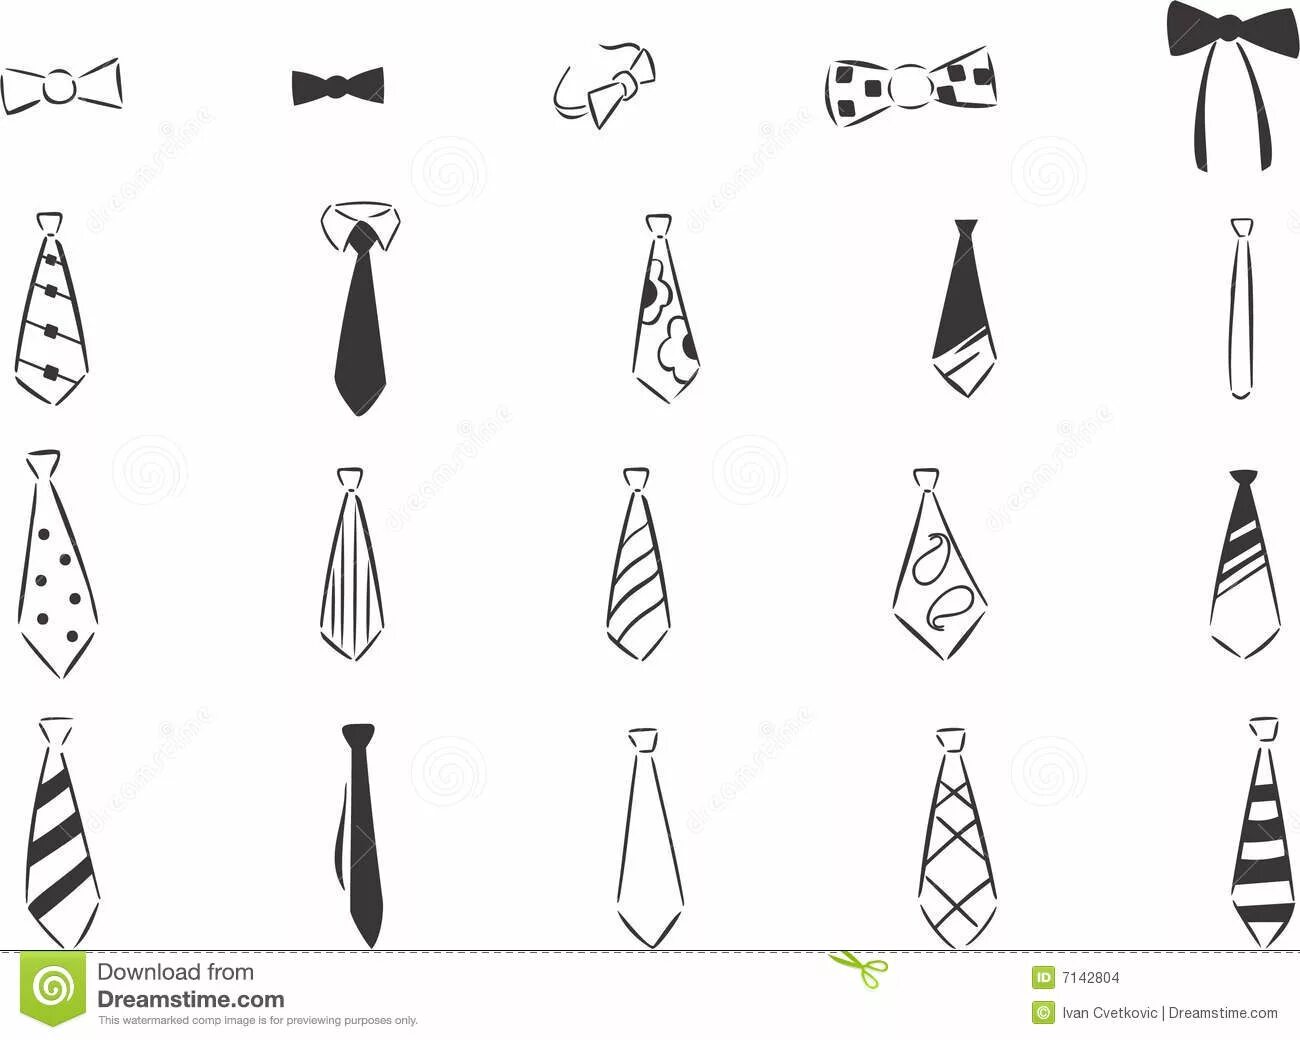 Креативная страница раскраски галстуков для детей